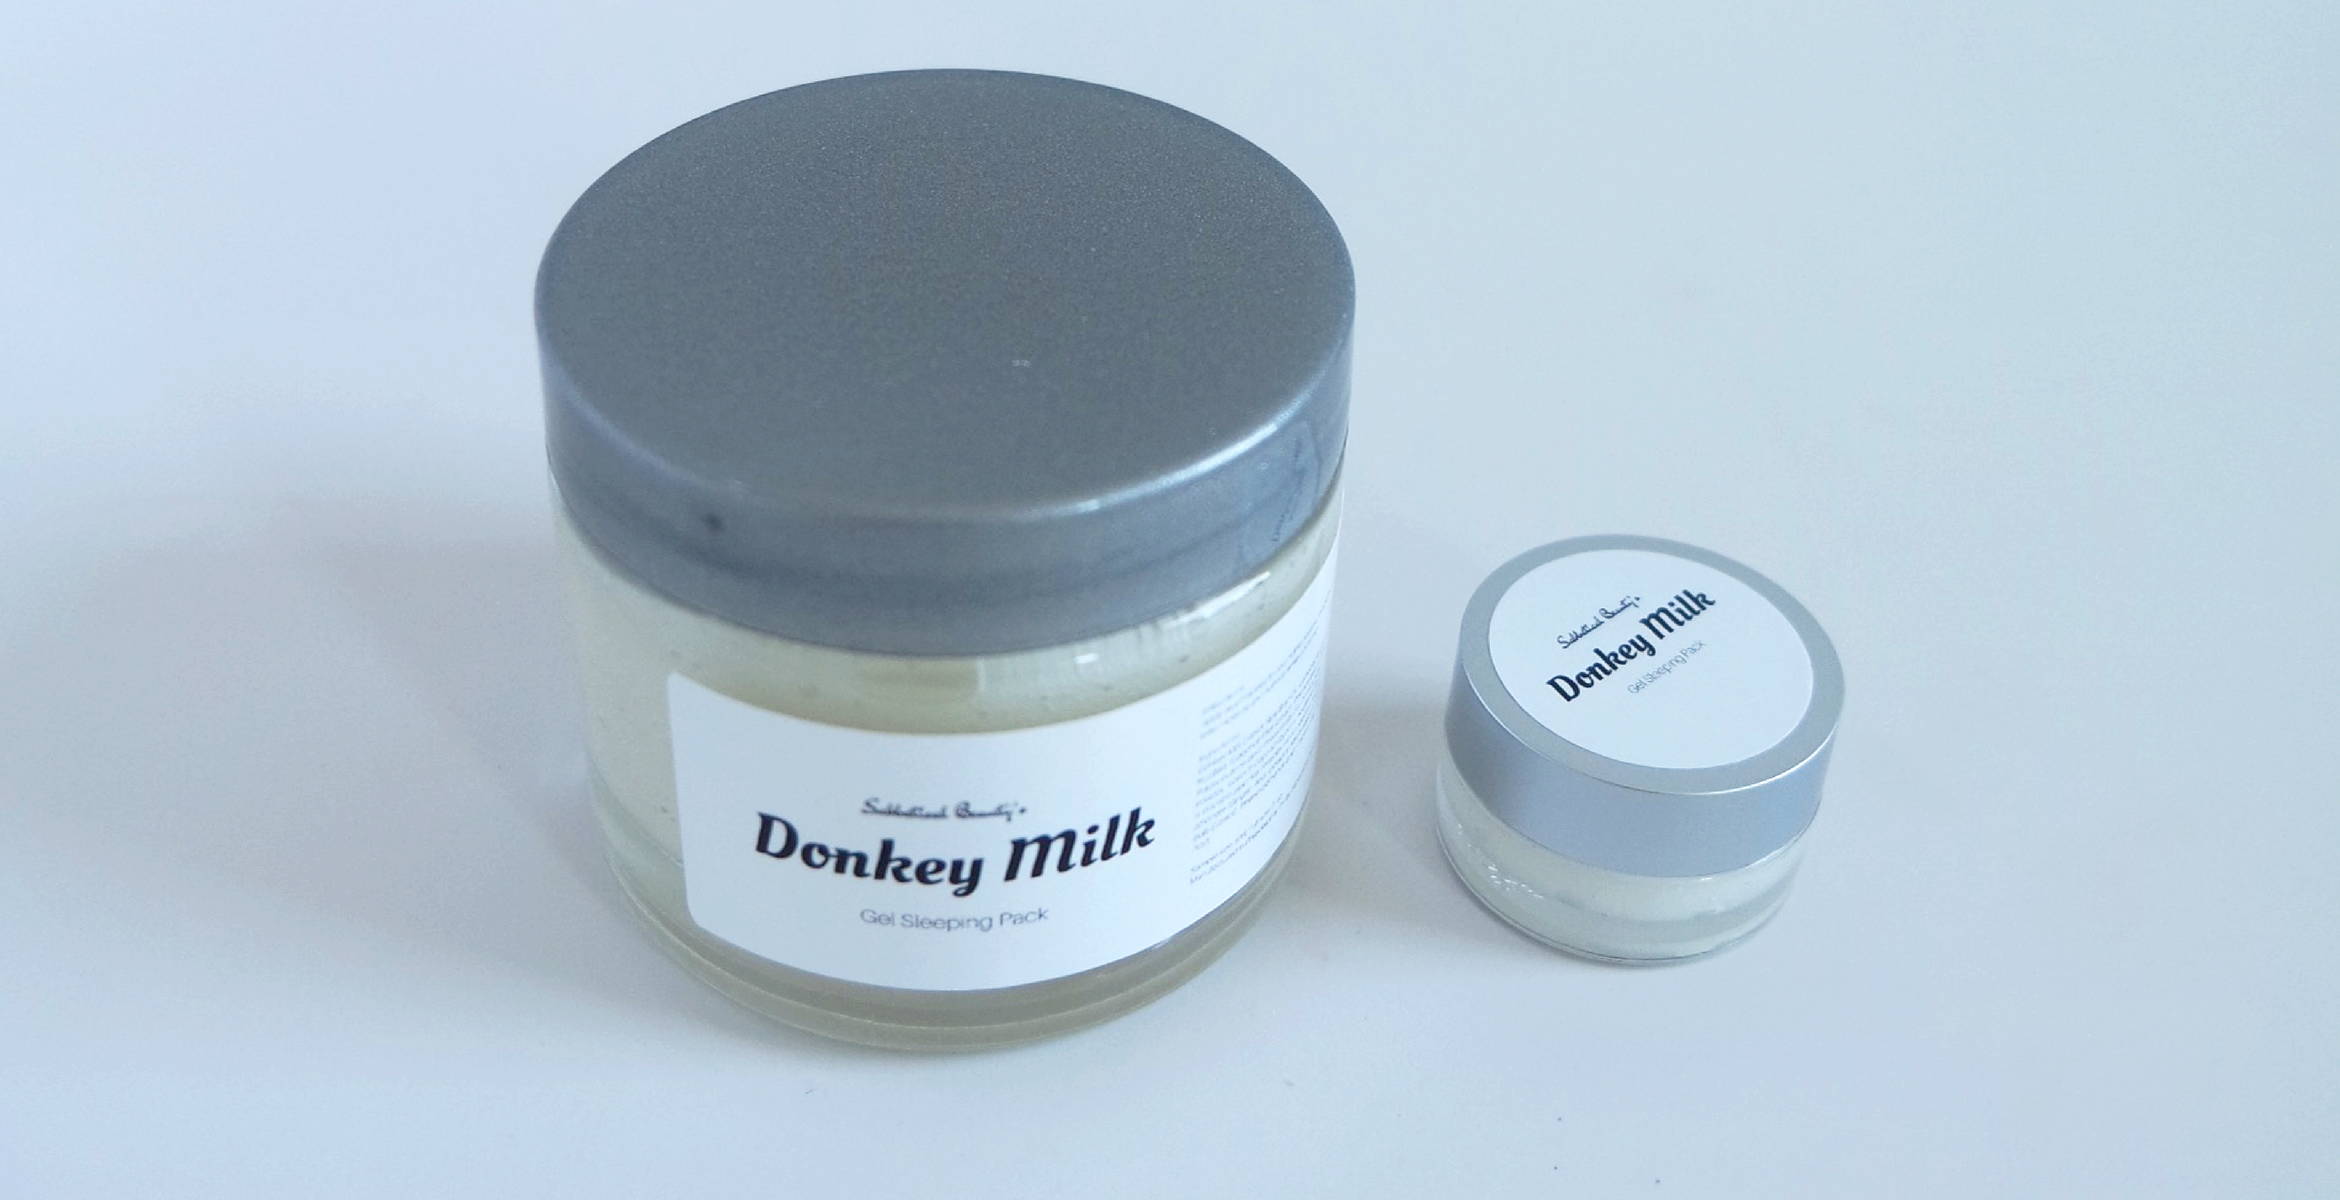 donkey milk gel sleeping pack